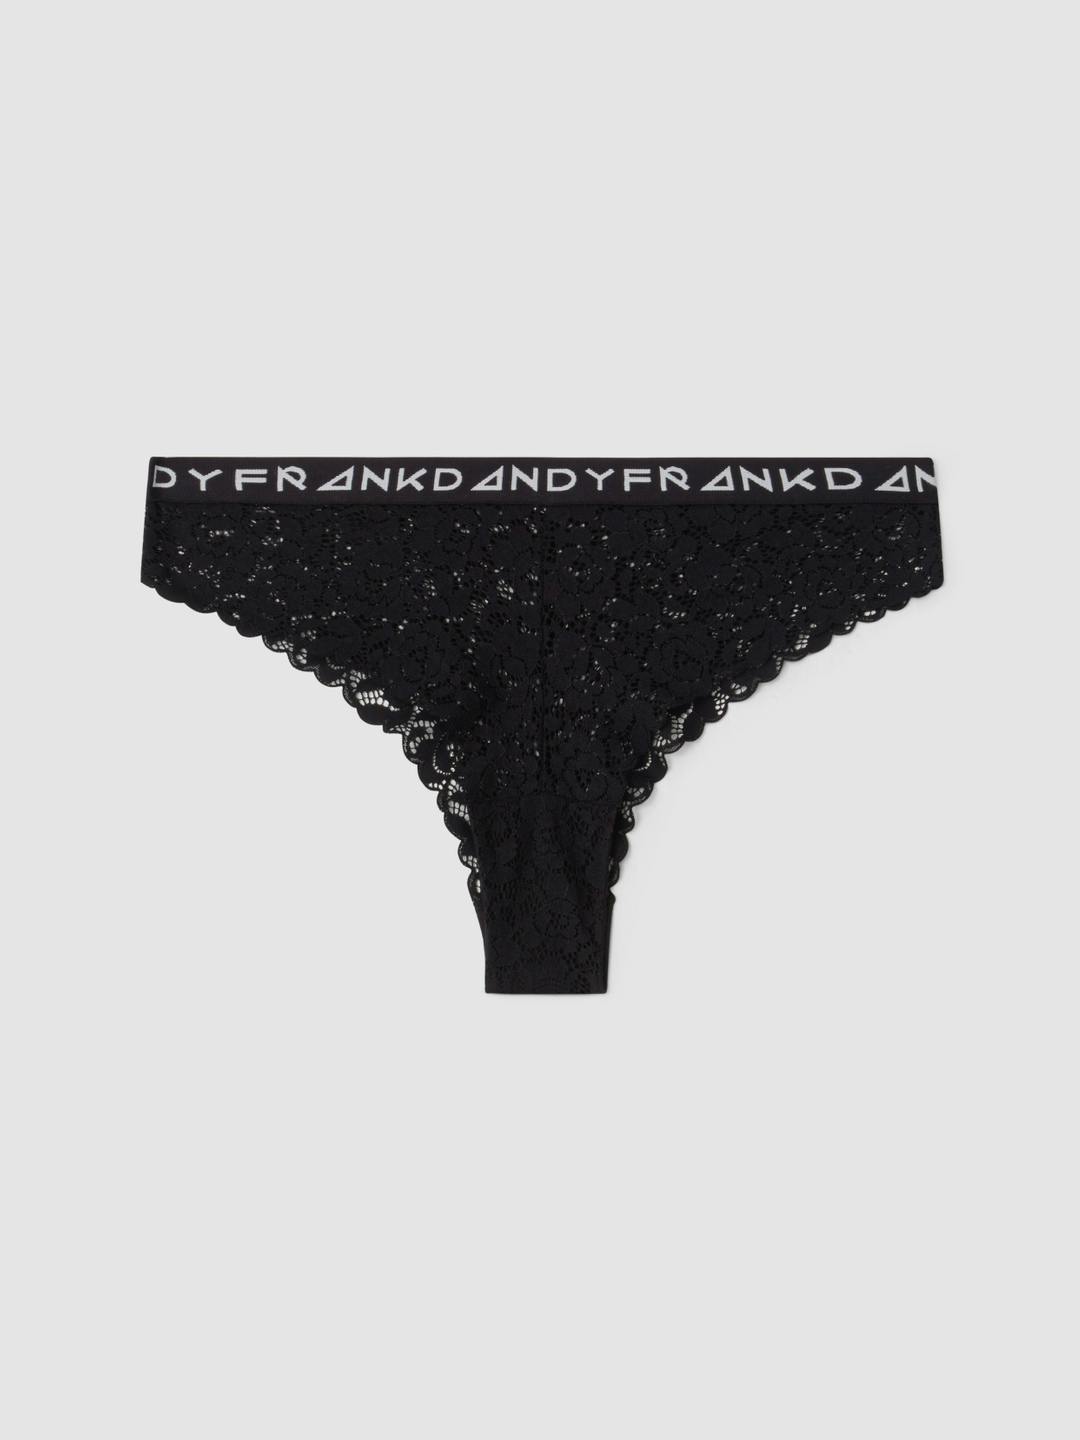 Fab-u-lace Brazilian Black, Women's Underwear, Frank Dandy